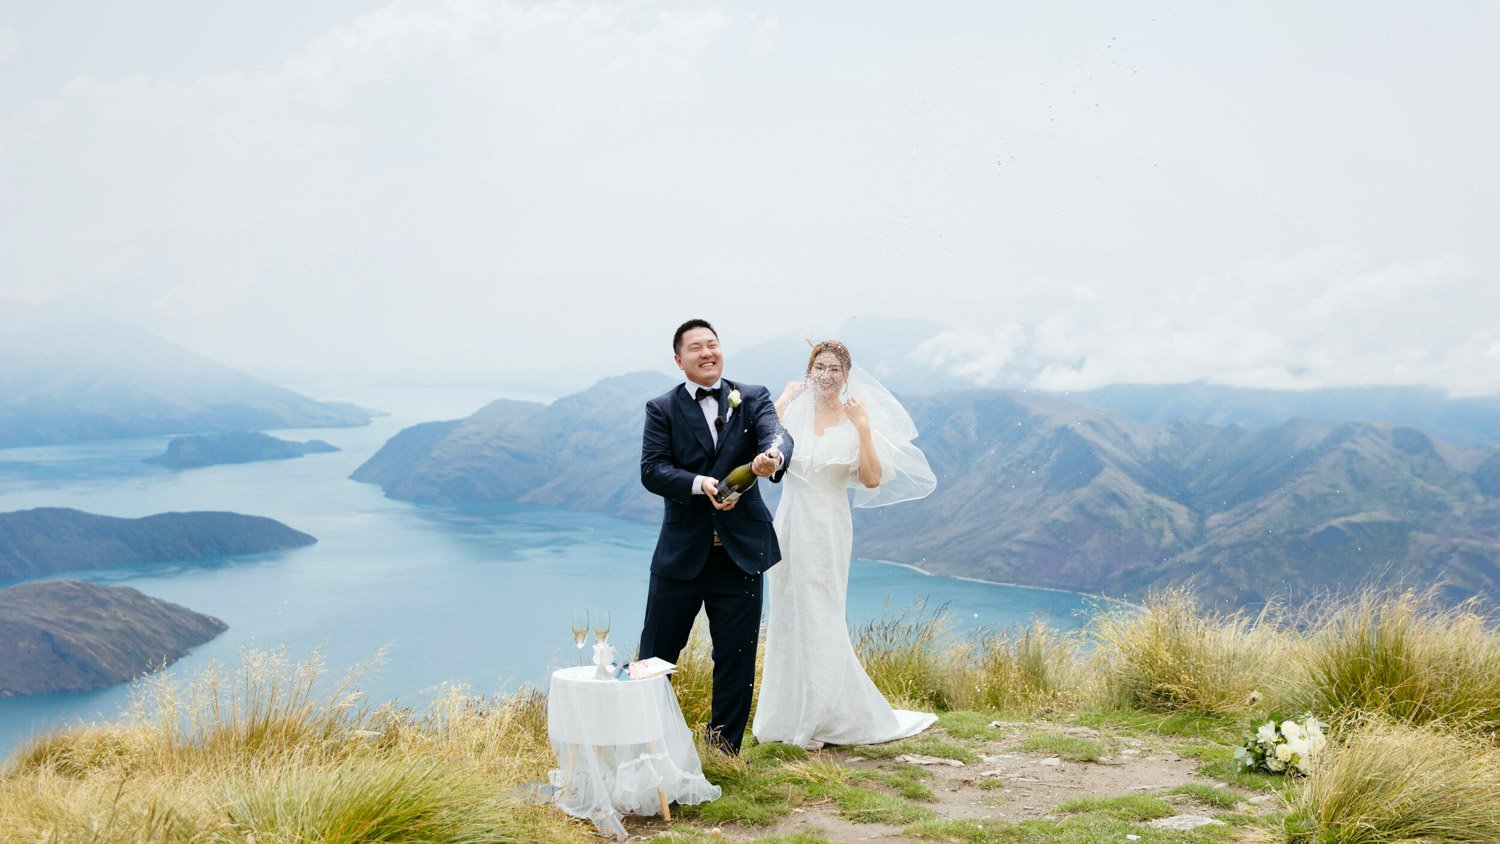 Queenstownn Canyons Lodge outdoor wedding elopement photographer Panda Bay Films-2.jpg